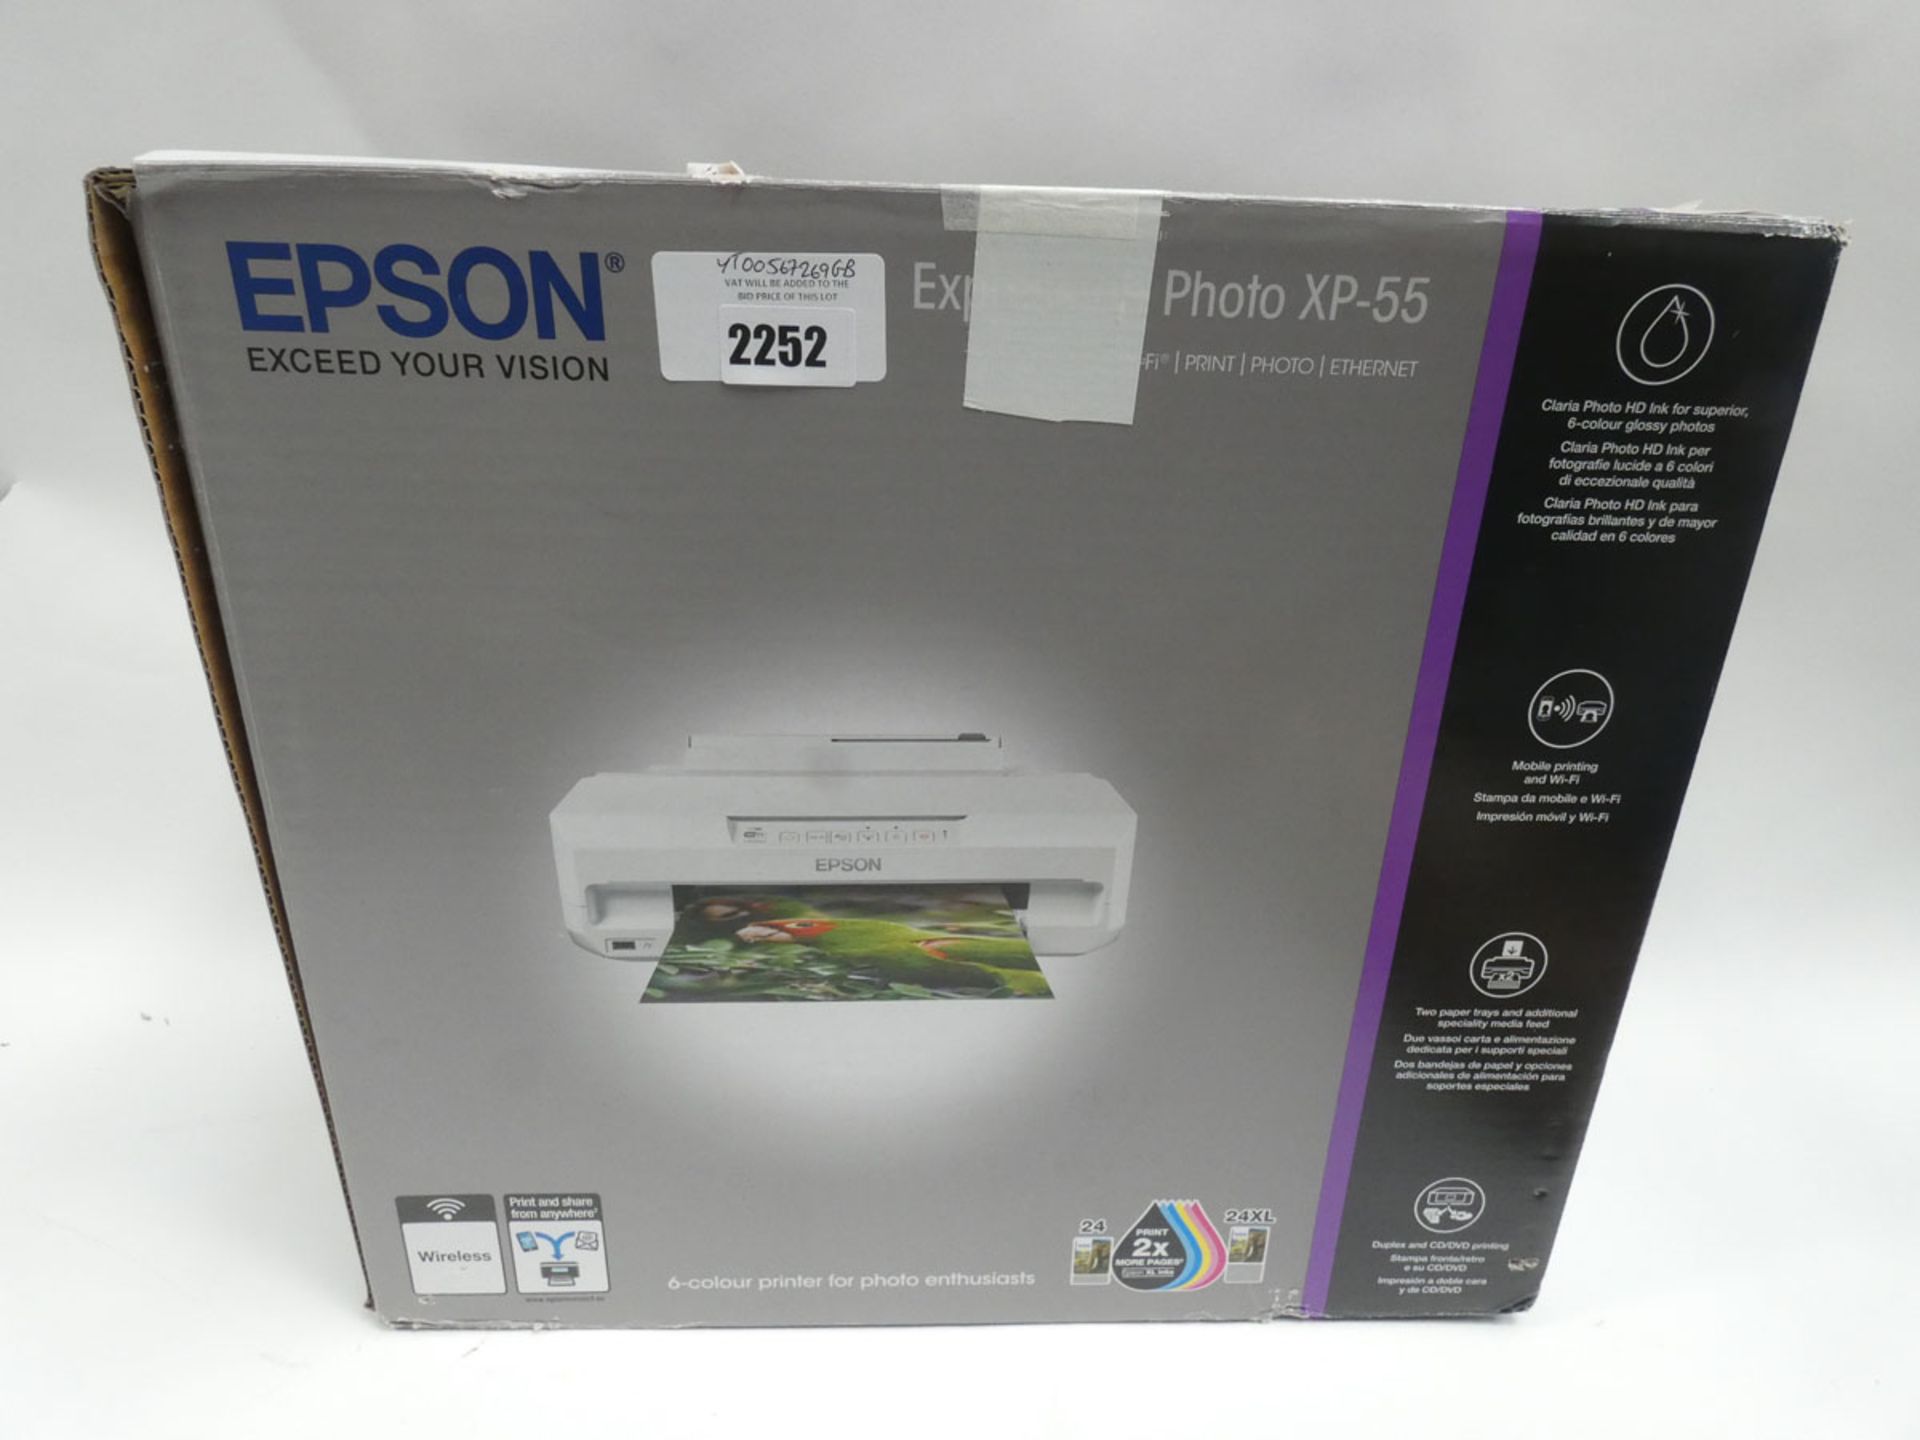 Epson Express Photo XP-55 wireless printer